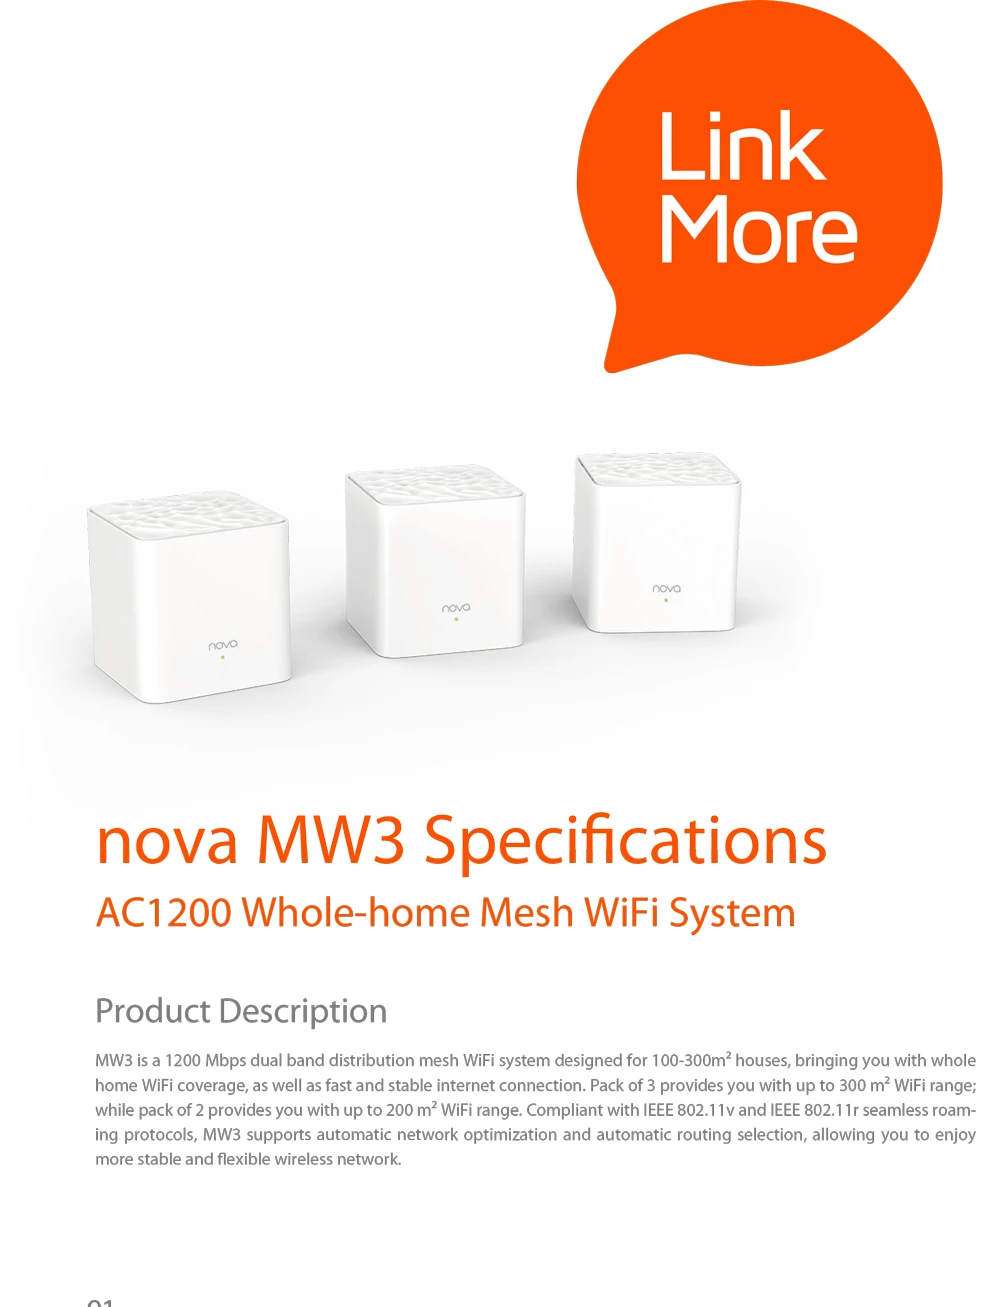 Tenda Nova MW3 весь дом ячеистой Wi-Fi гигабитный Системы с AC1200 2,4 г/5,0 ГГц Wi-Fi, Беспроводной маршрутизатор и Wi-Fi репитер, приложение дистанционное